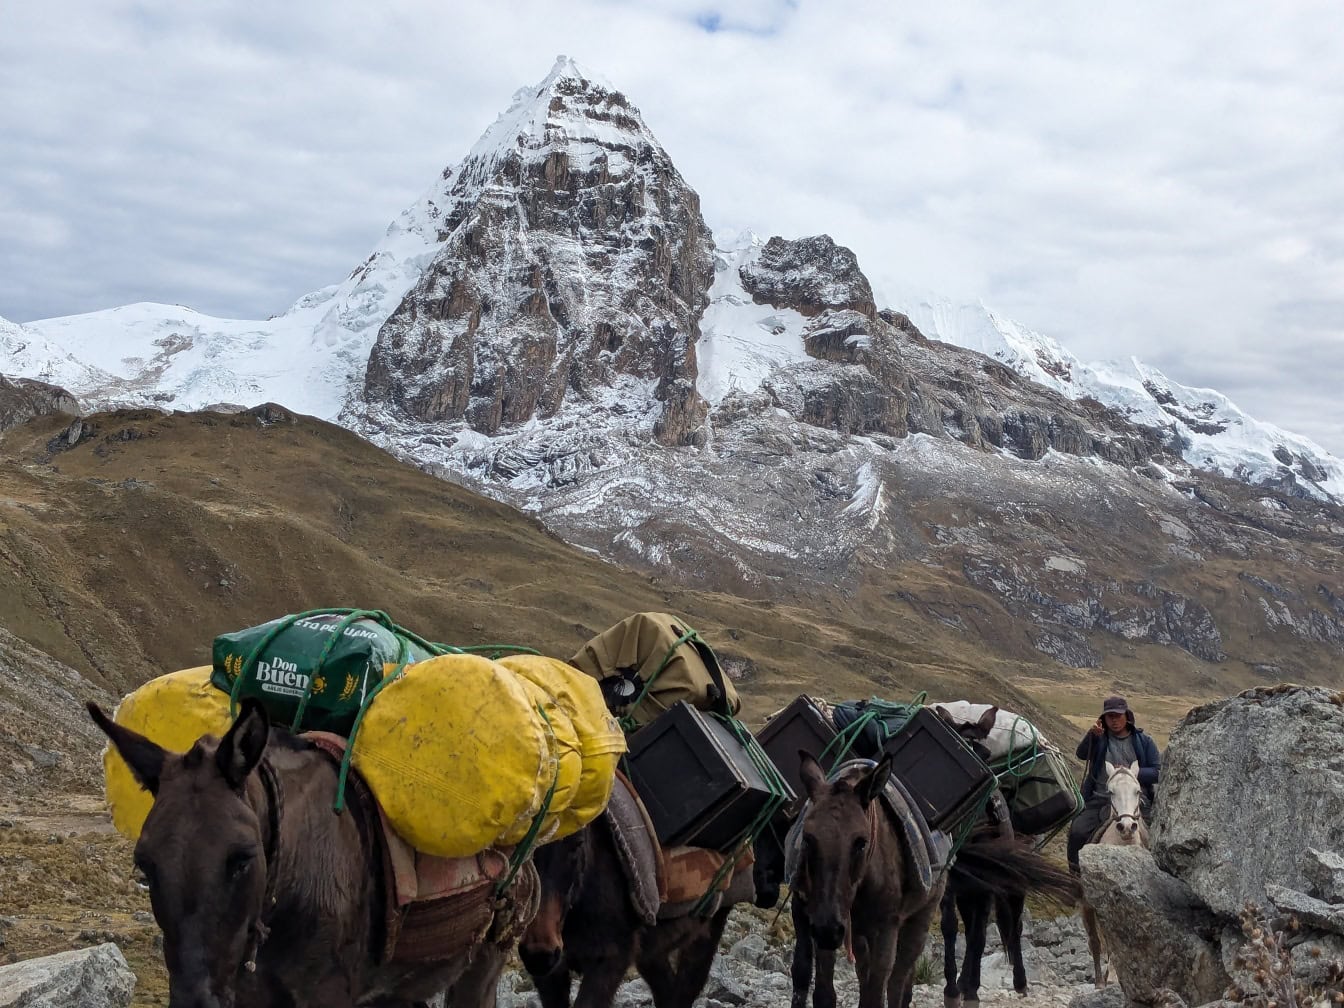 Caravana de mulas peruanas transportando carga na cordilheira Huayhuash nos Andes do Peru